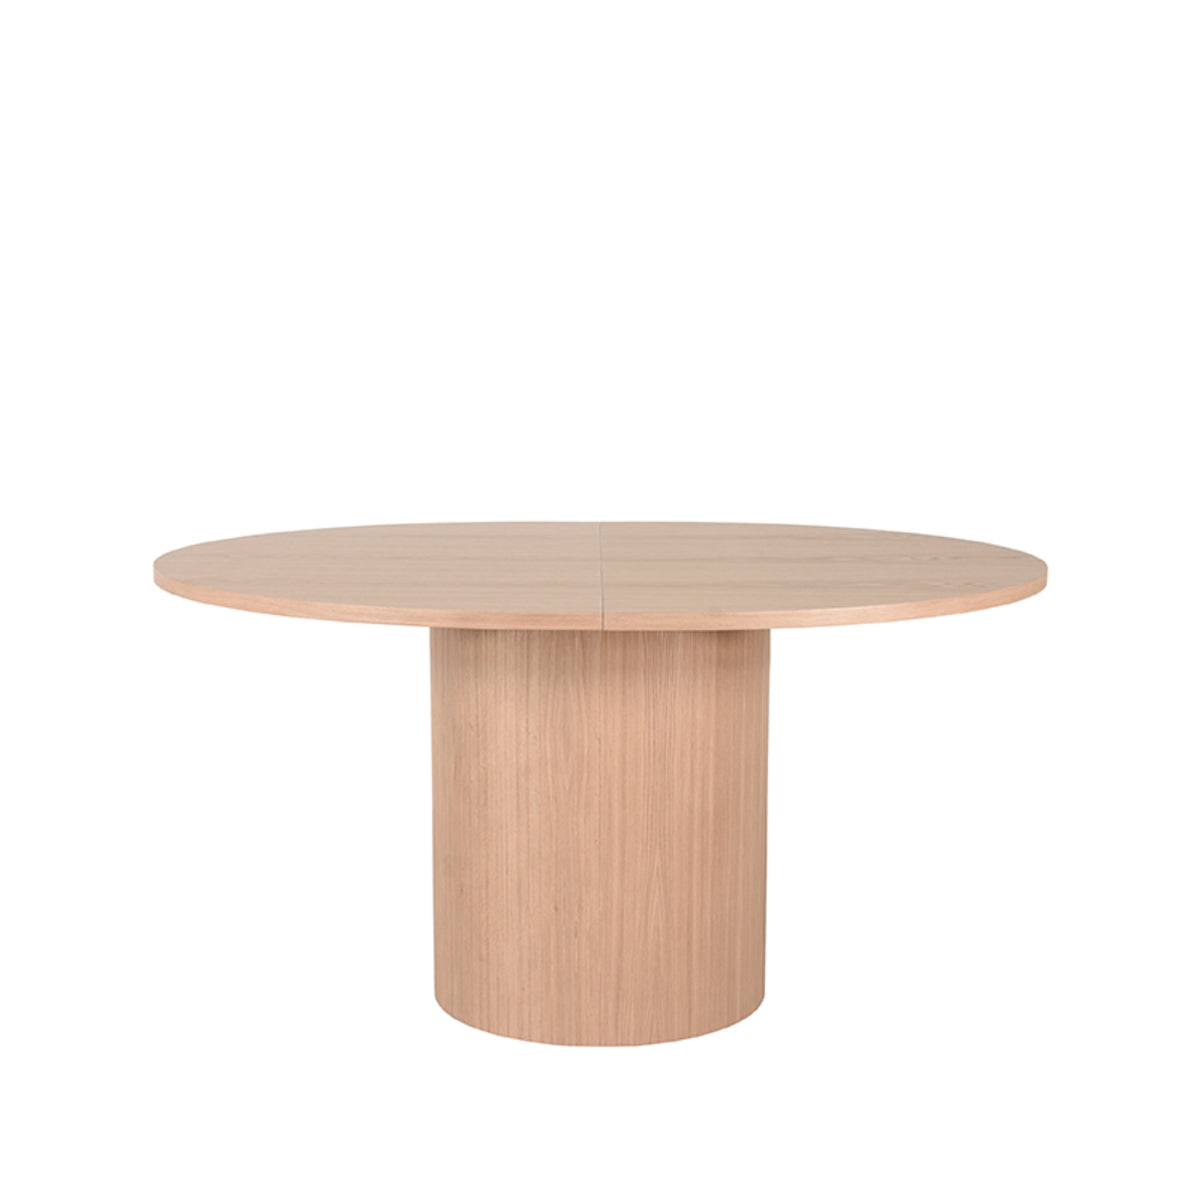 LABEL51 Dining room table Oliva - Natural - Oak - 150-200 cm -